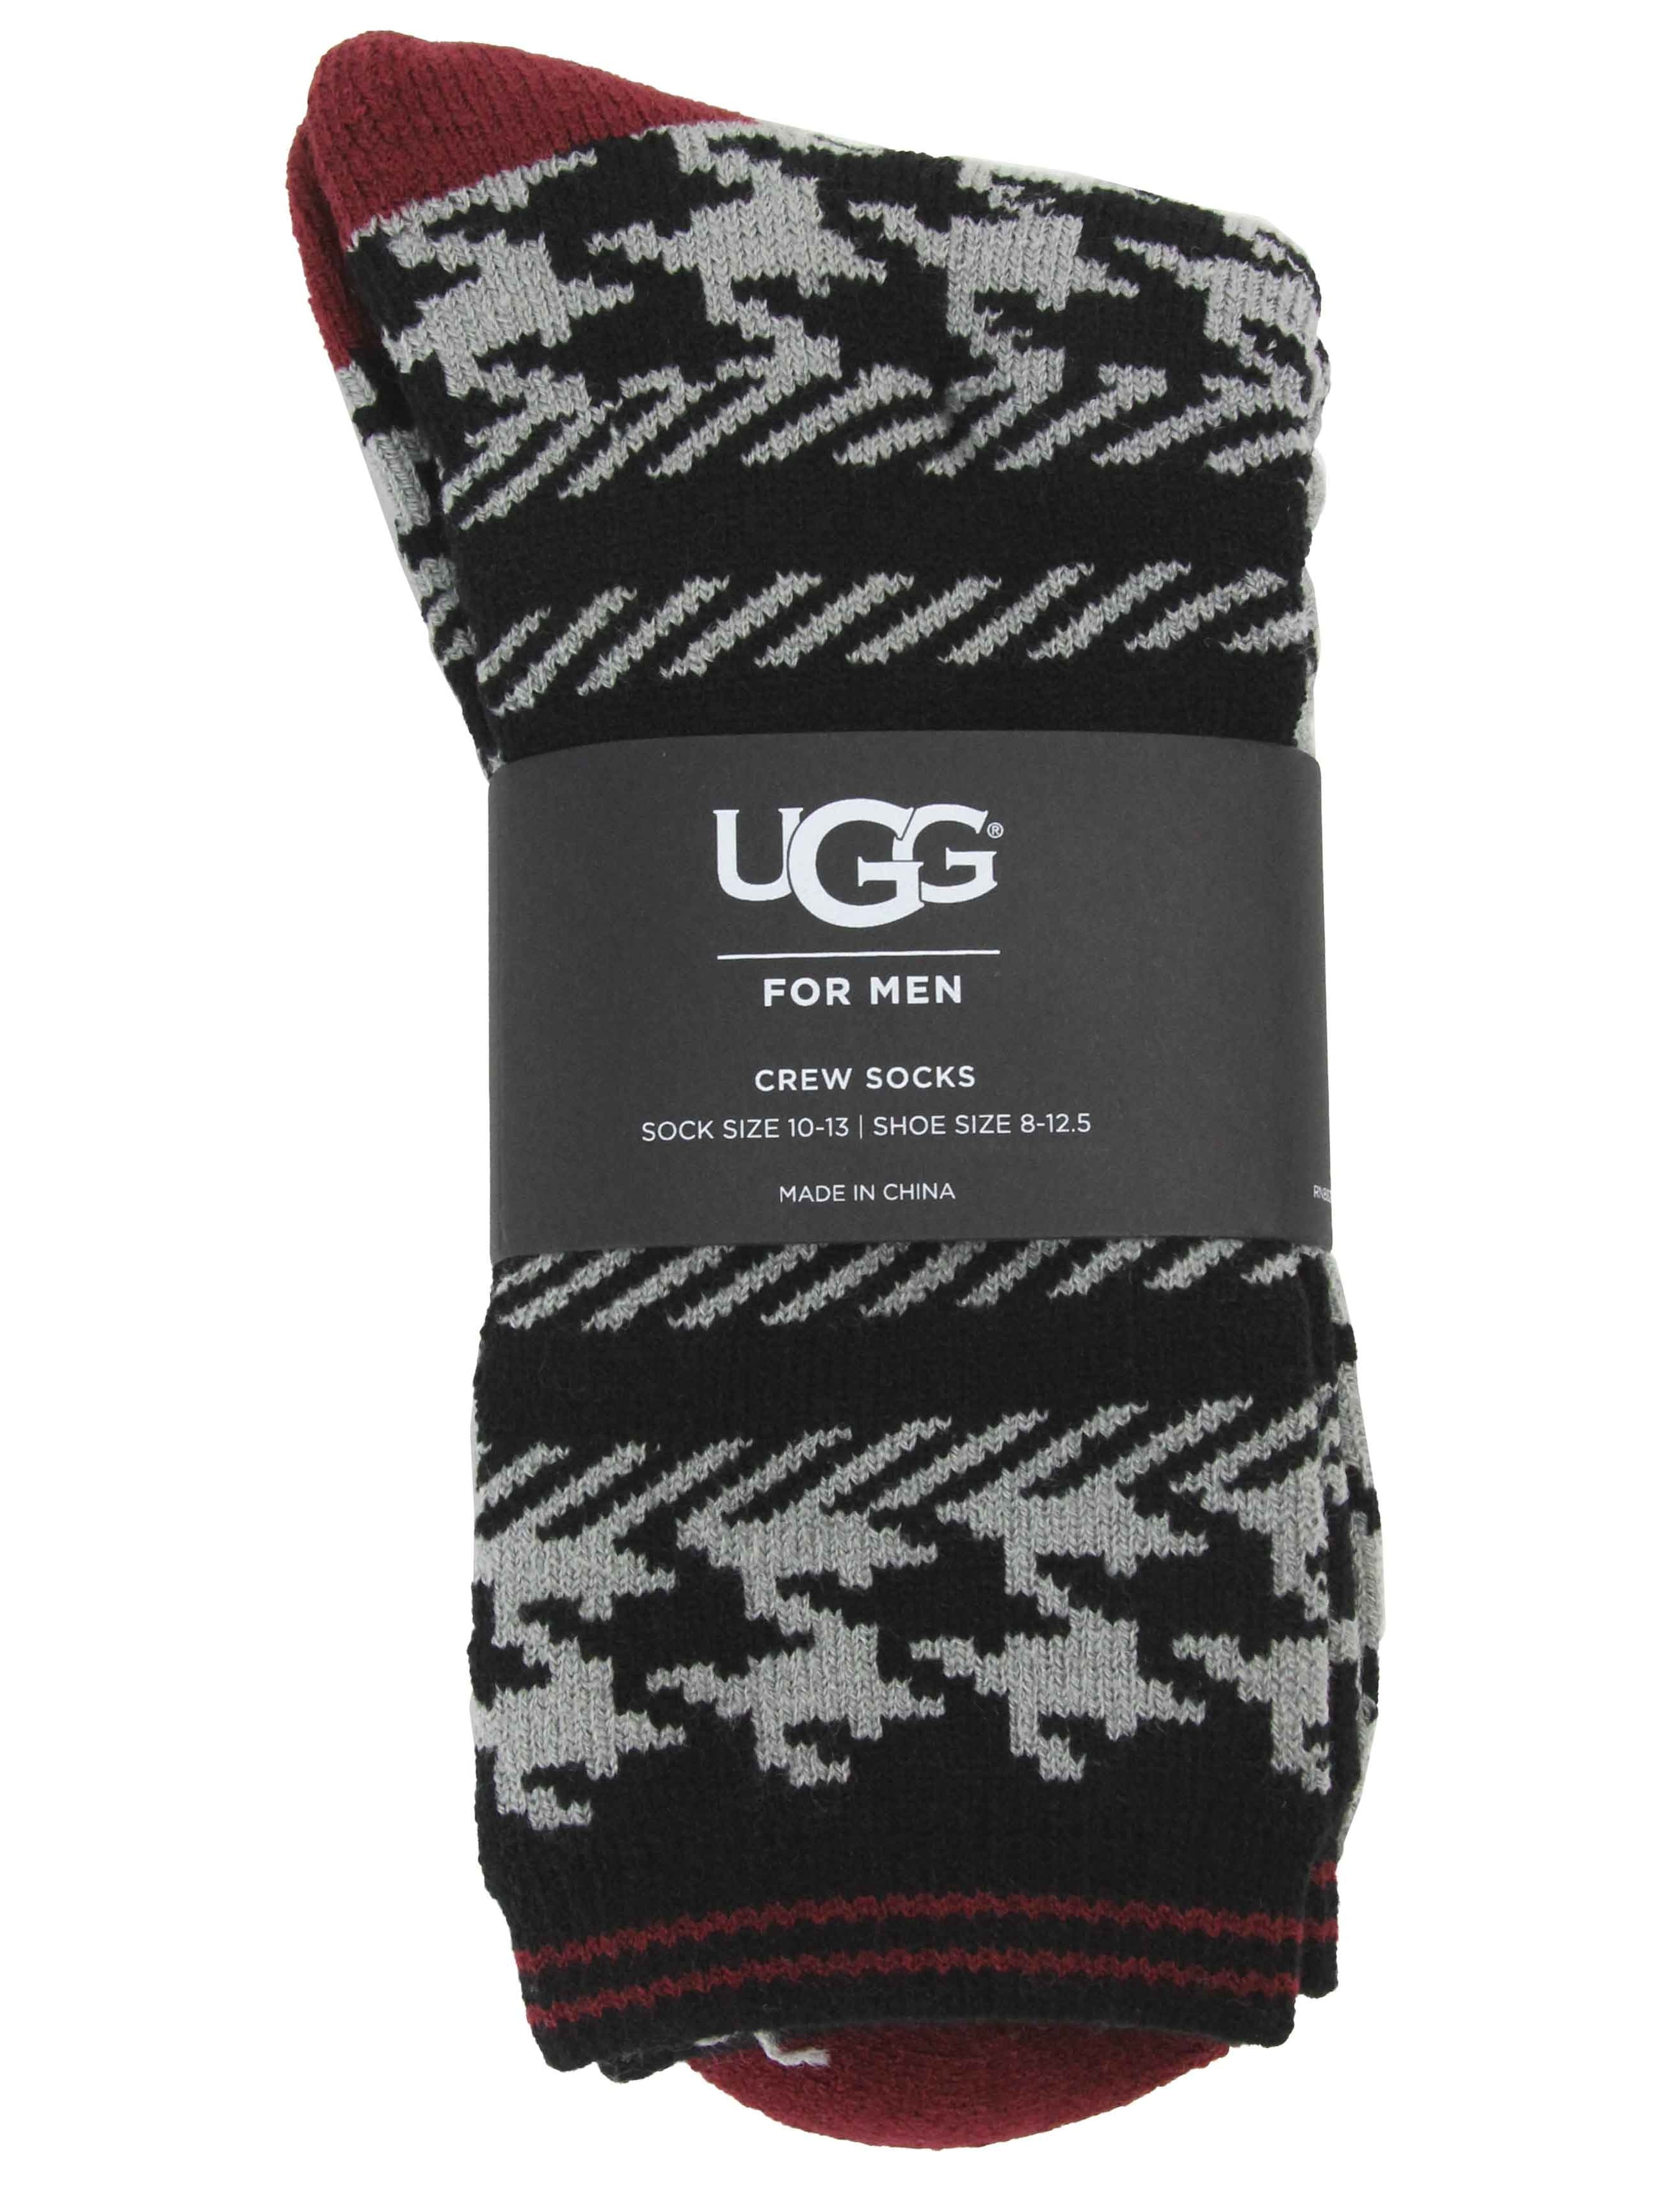 UGG - Ugg Men's Houndstooth Crew Socks 